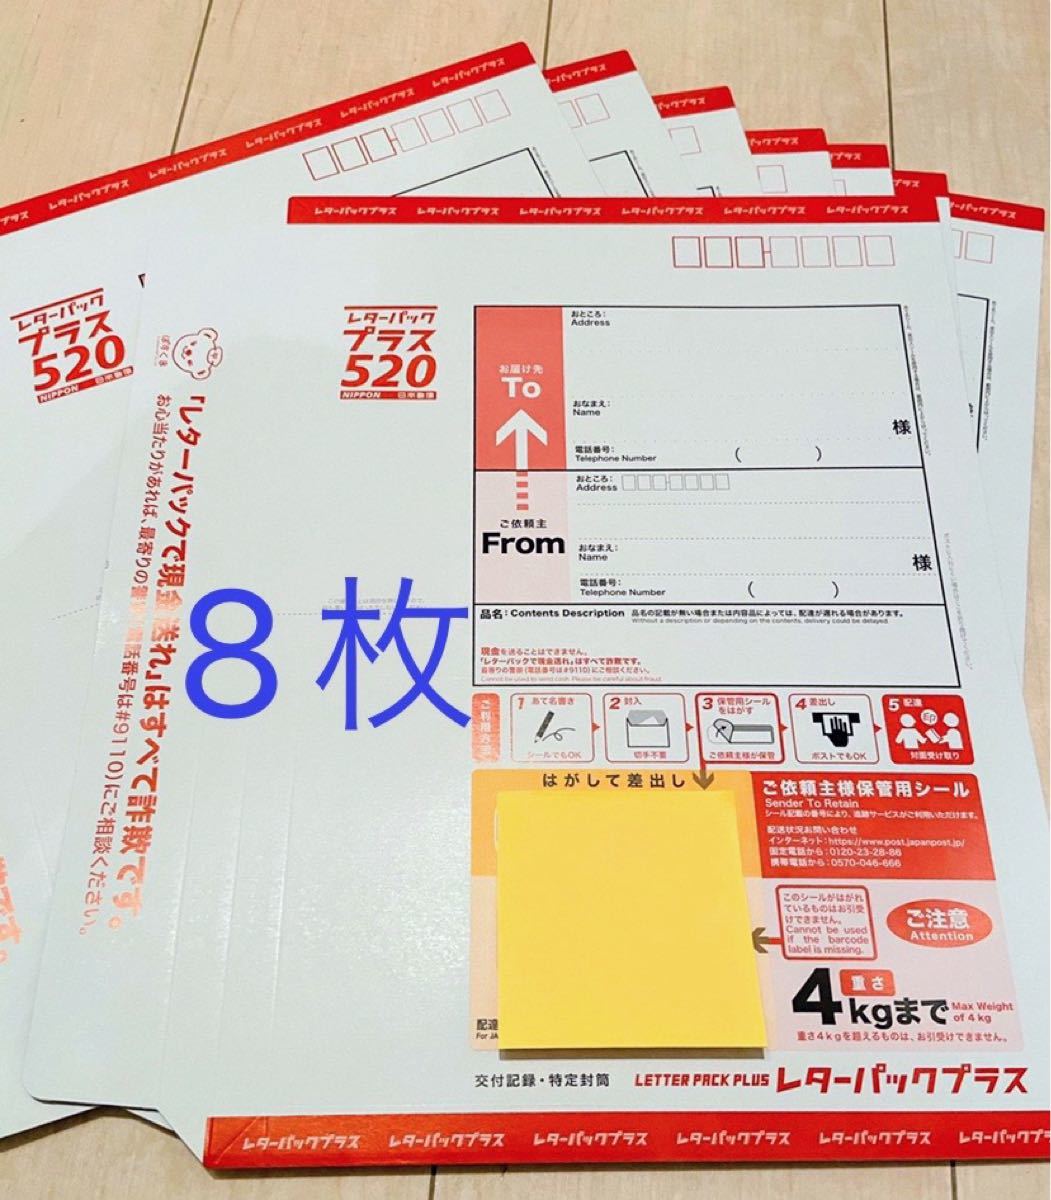 送料無料 日本郵便 レターパックプラス 新品 20枚 一部折り曲げて発送 